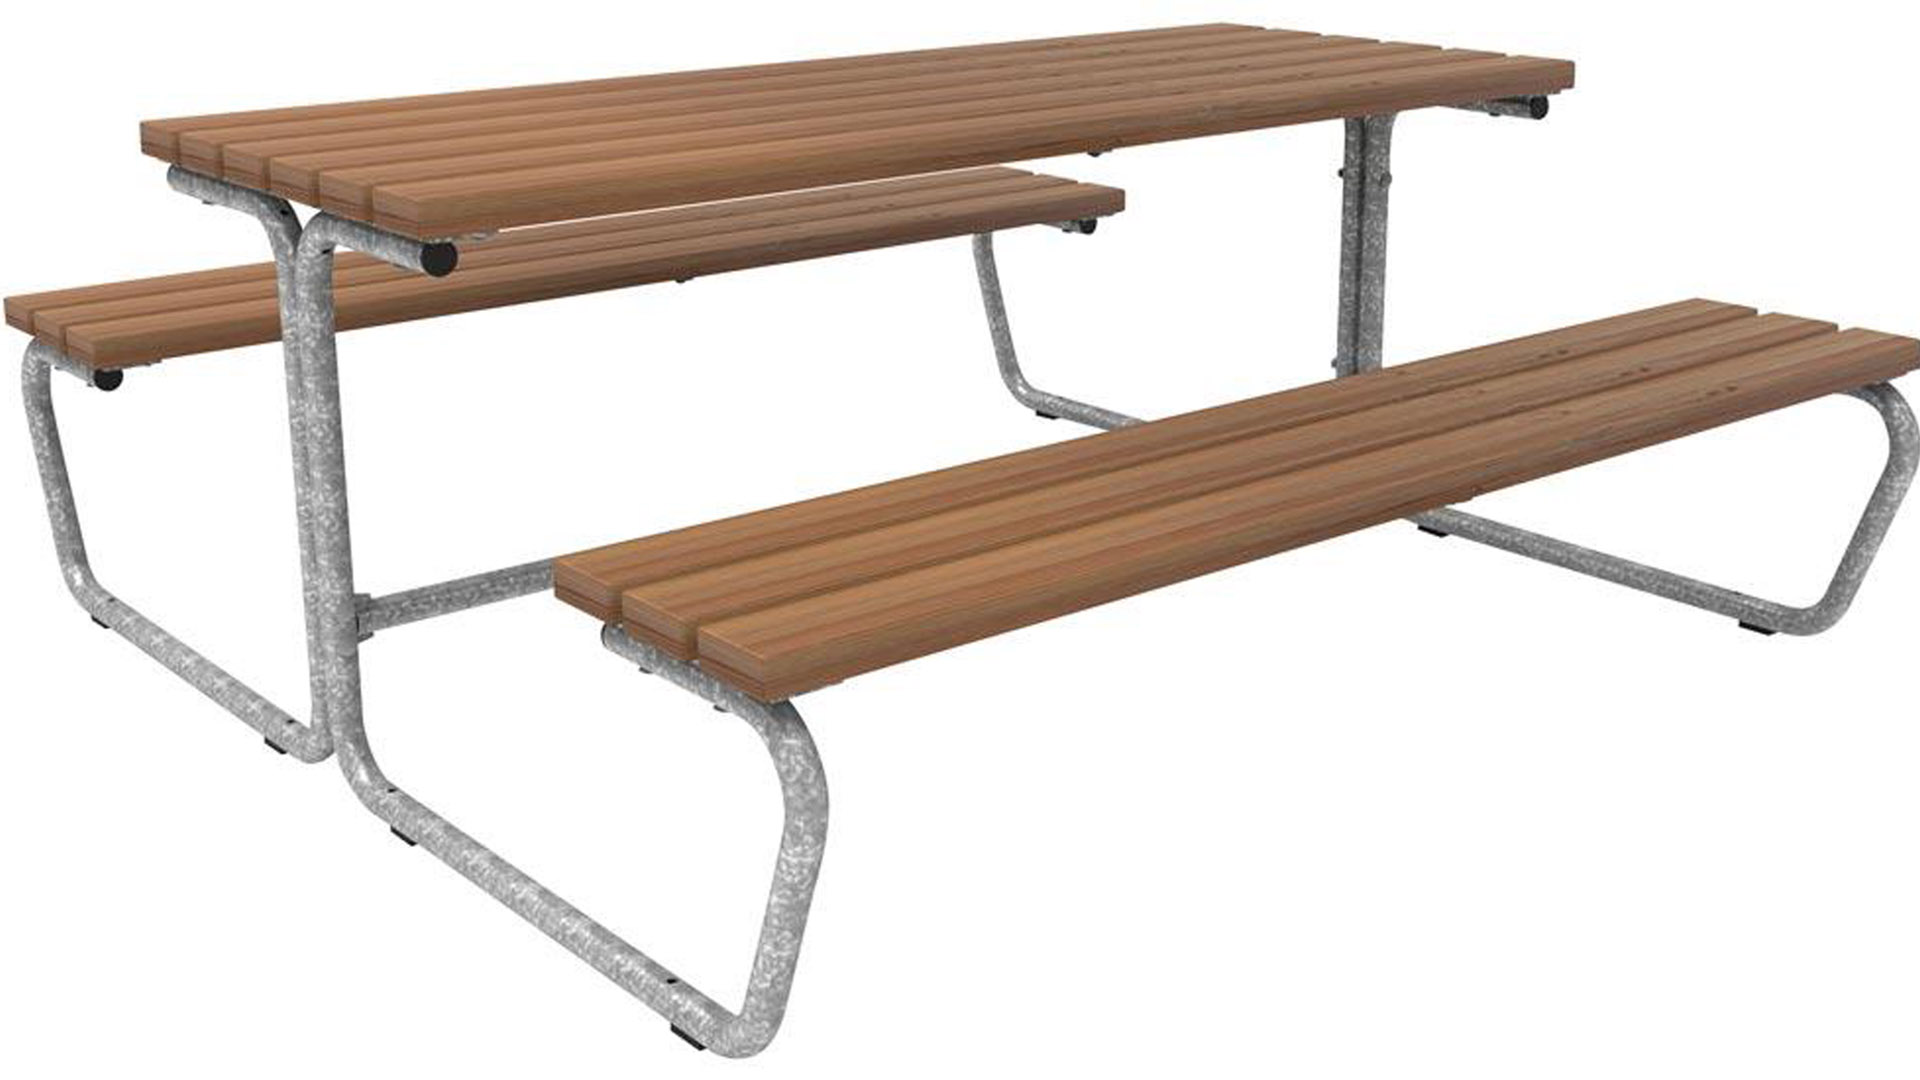 Sitzgarnitur, bestehend aus: 2 Bänke, Sitzfläche Bambus, 1 Tisch,  Tischfläche aus Bambus Savanna, BxTxH 1770x1870x731 mm